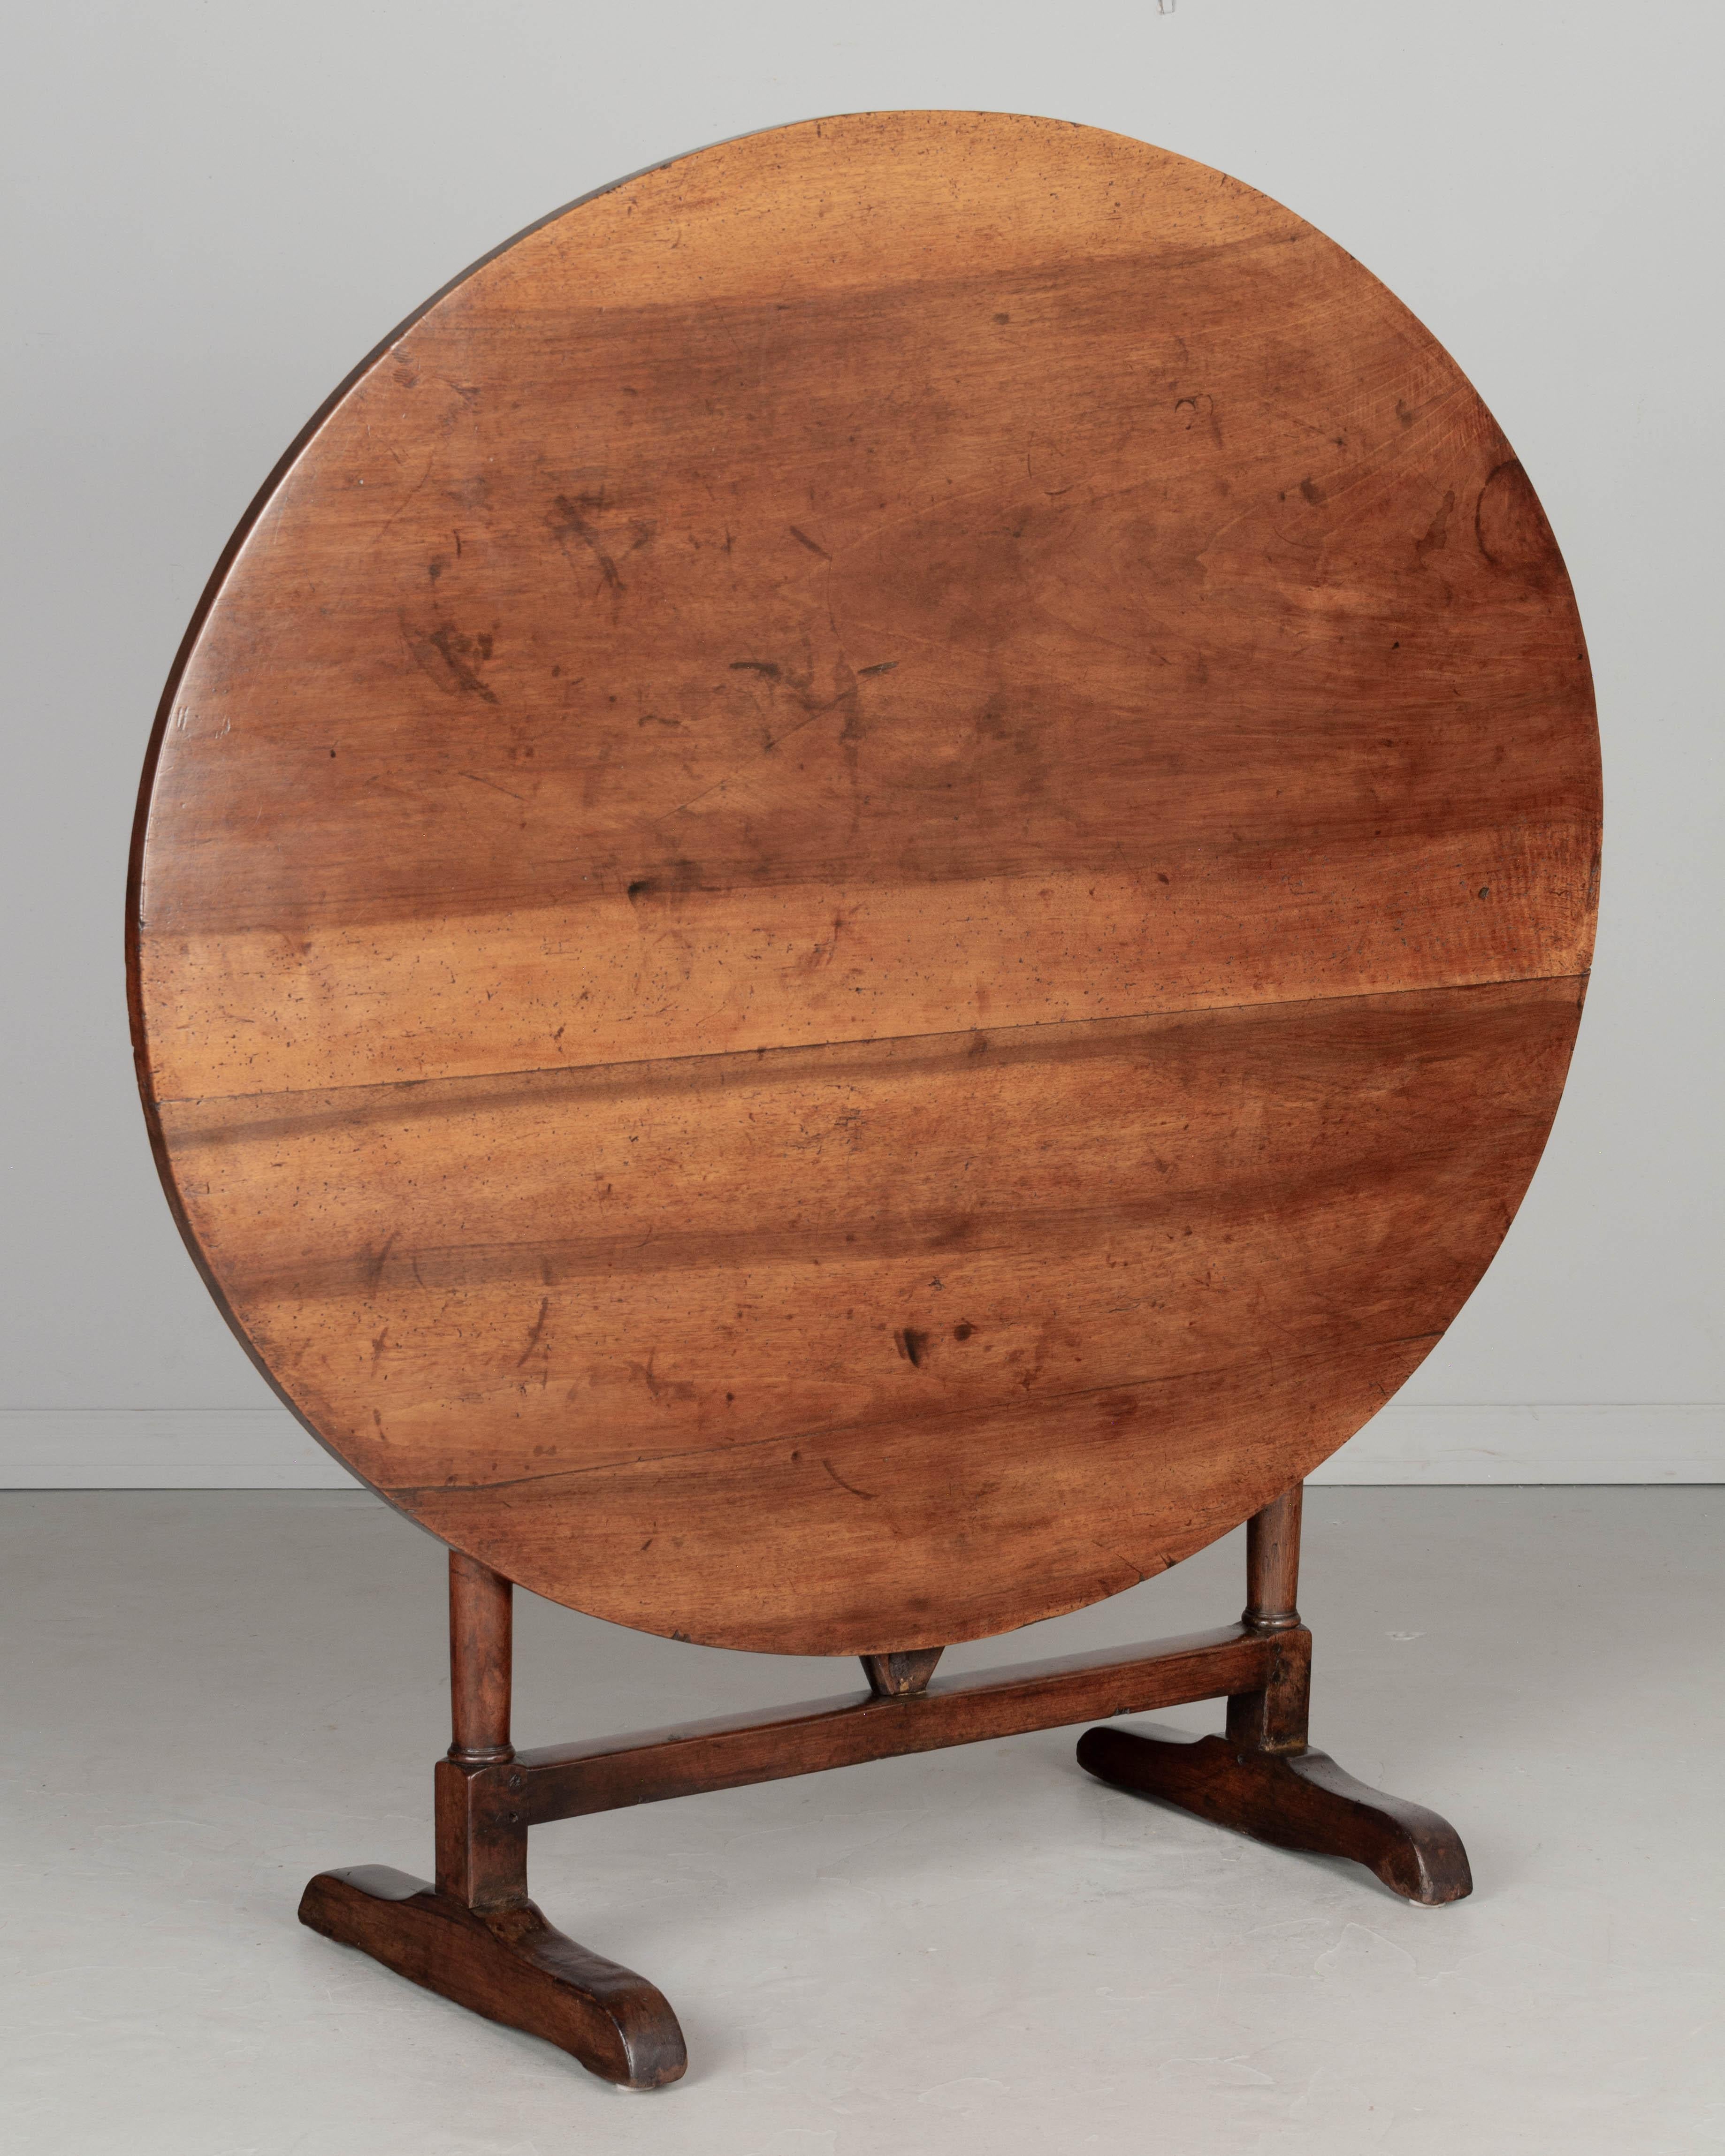 Table ovale de dégustation de vin ou table à bascule en noyer du XIXe siècle. Le plateau est constitué de trois planches de noyer massif, une de 24 pouces de large et deux plus petites. Le grain et le caractère du bois sont magnifiques. Bien